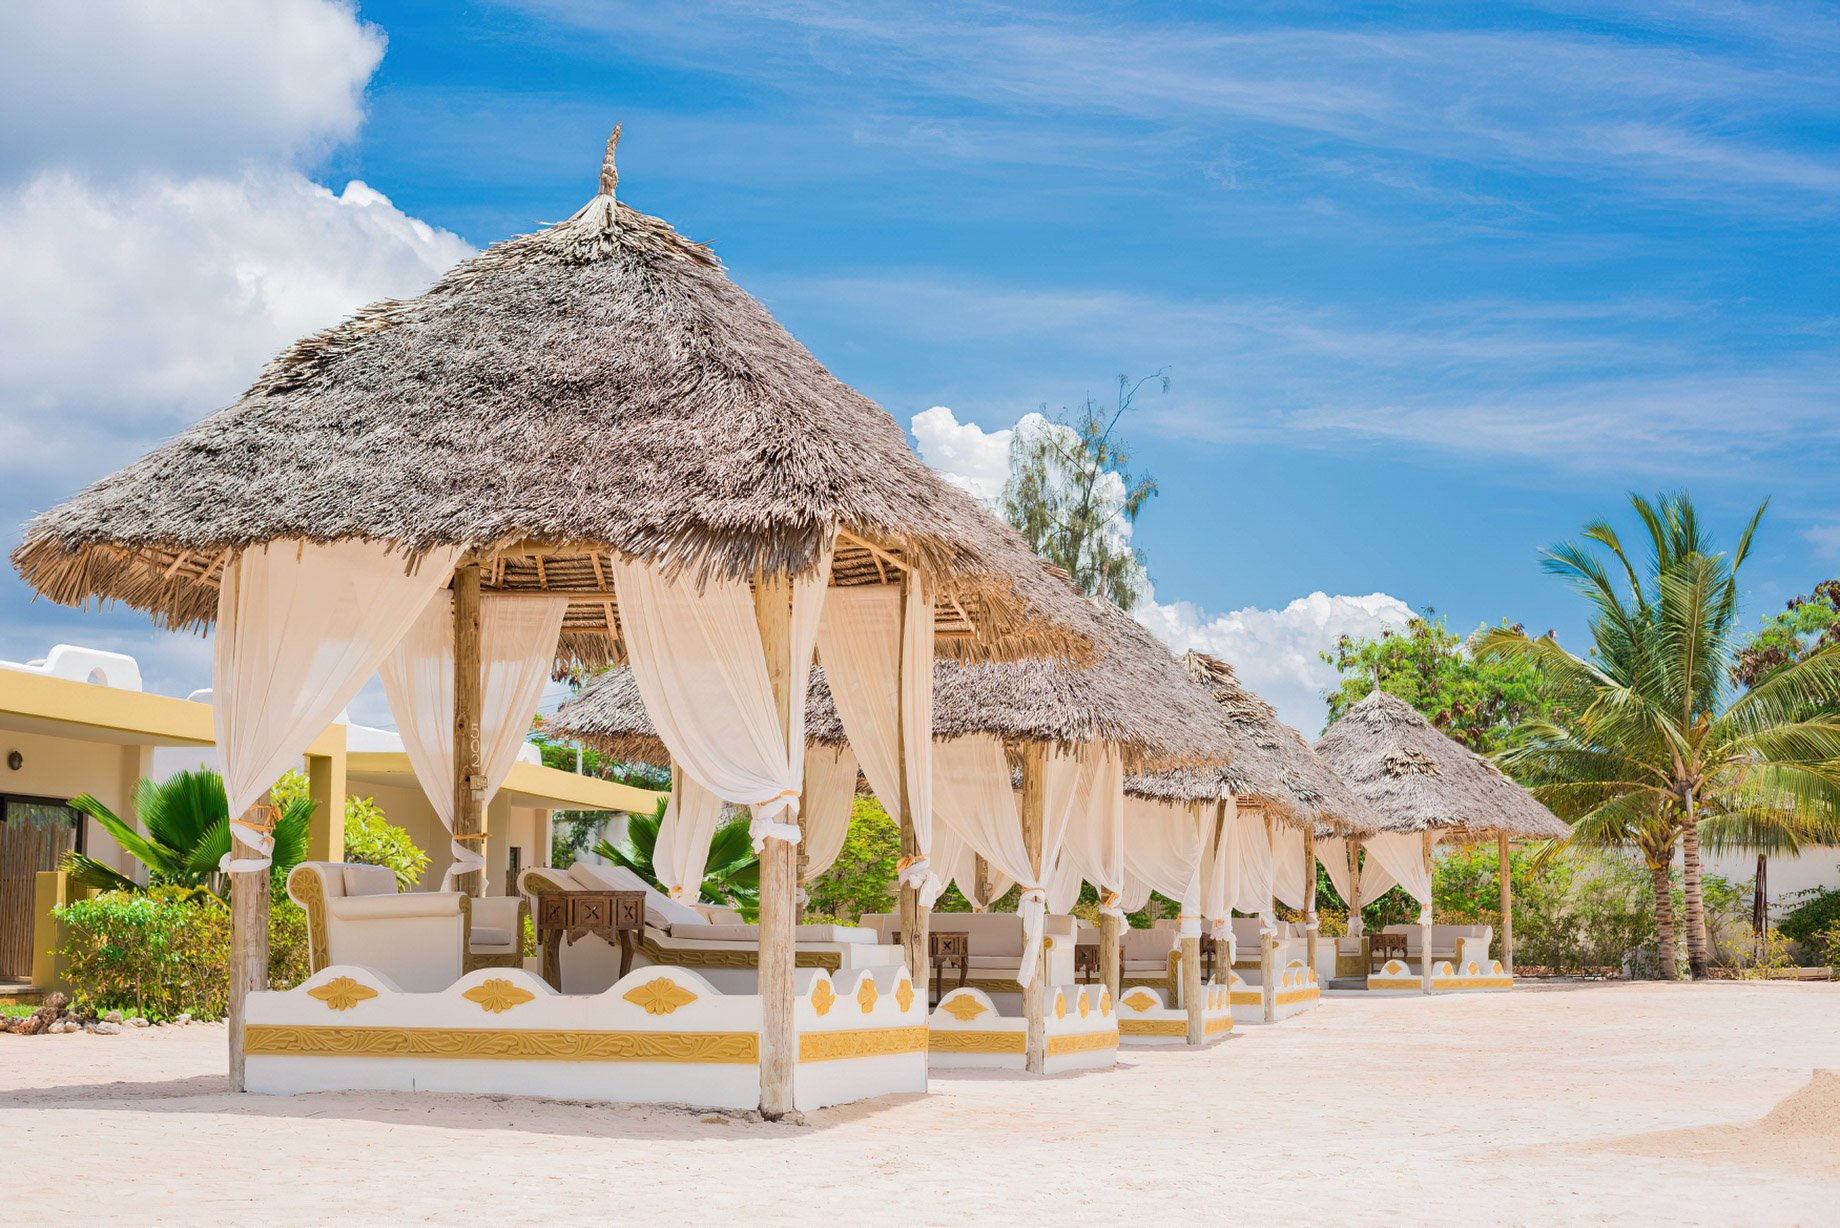 Gold Zanzibar Beach House & Spa Resort – Nungwi, Zanzibar, Tanzania – Cabanas